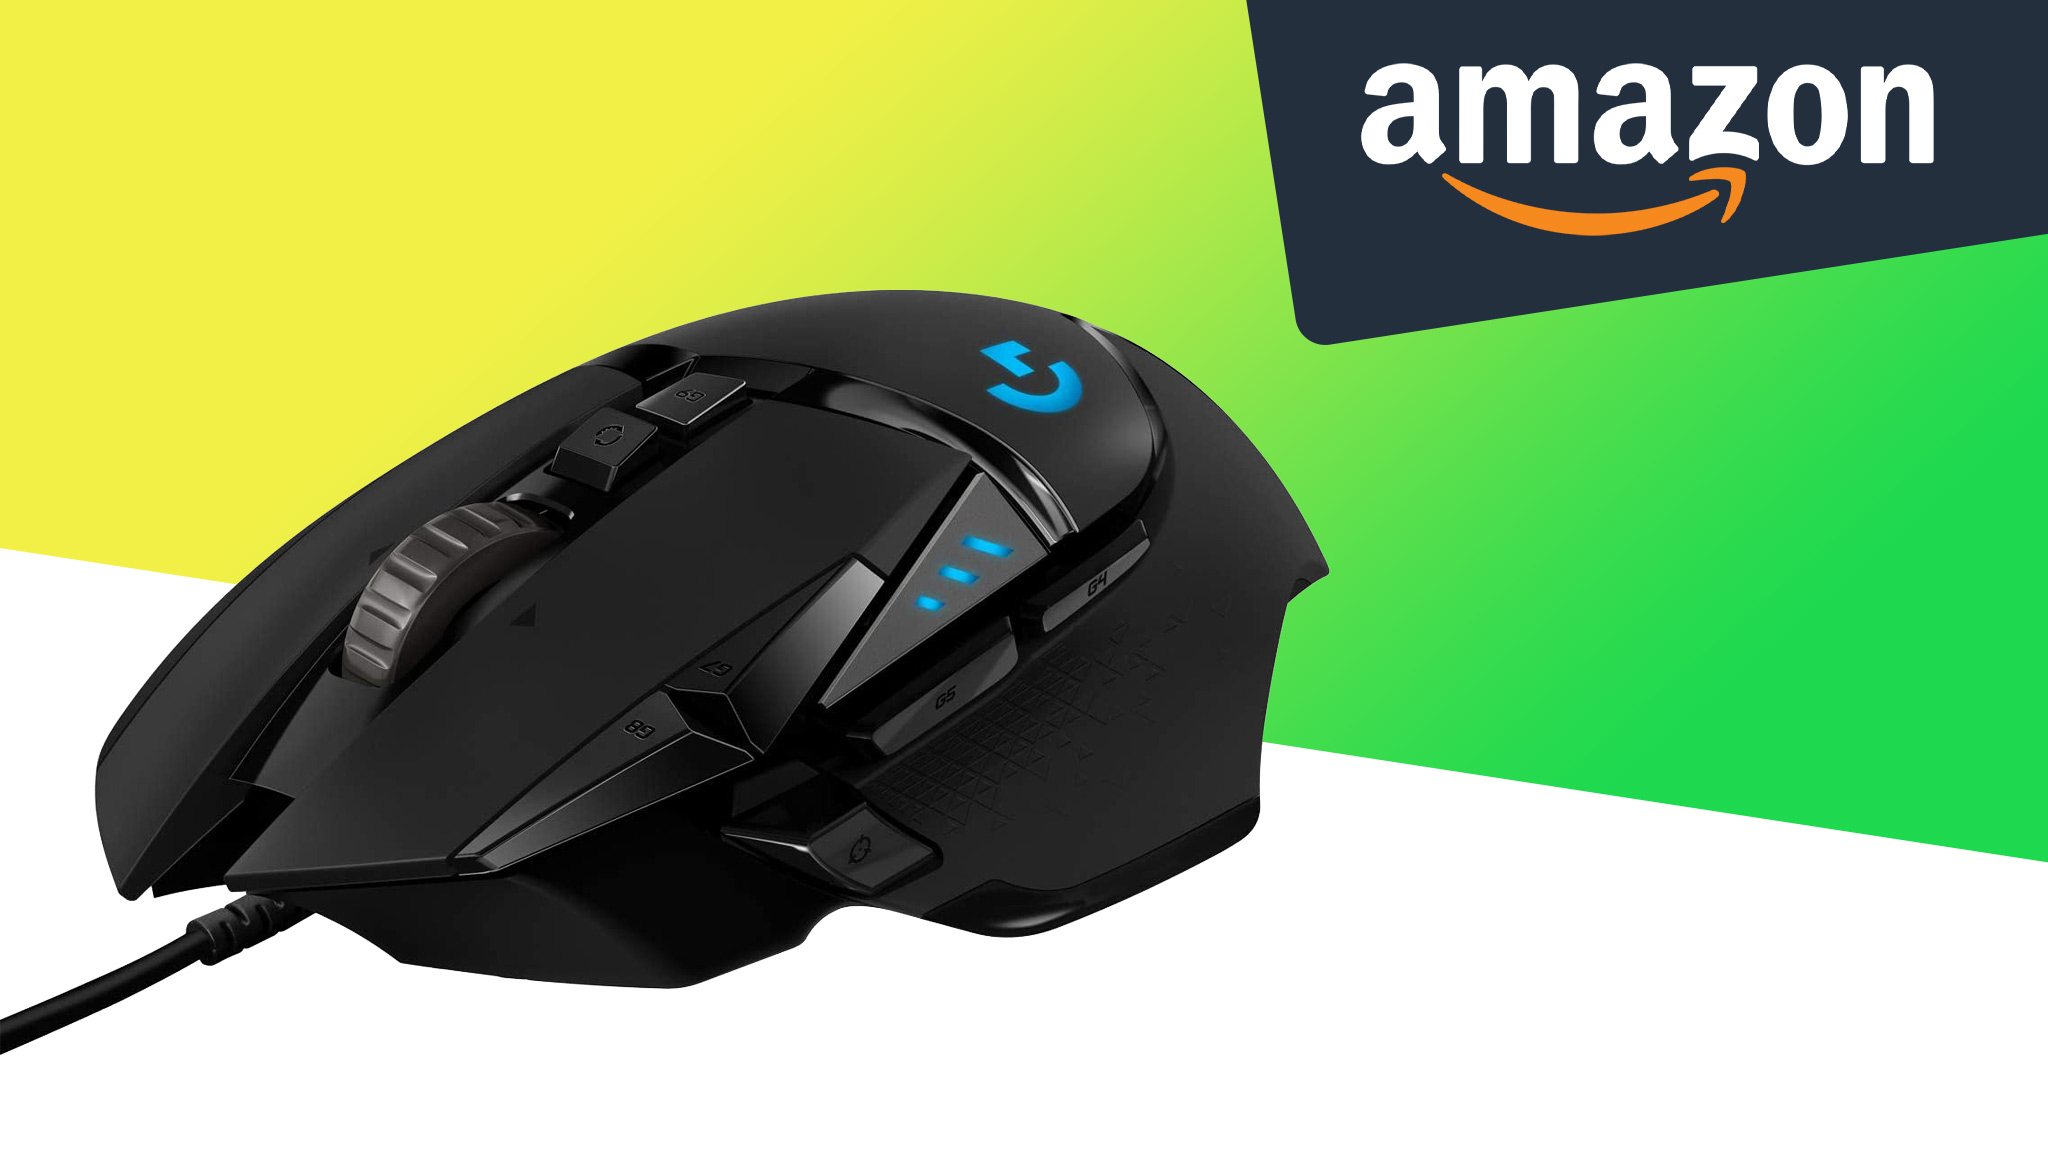 Amazon: Beliebte Gaming-Maus Logitech G502 Hero für etwa 35 Euro